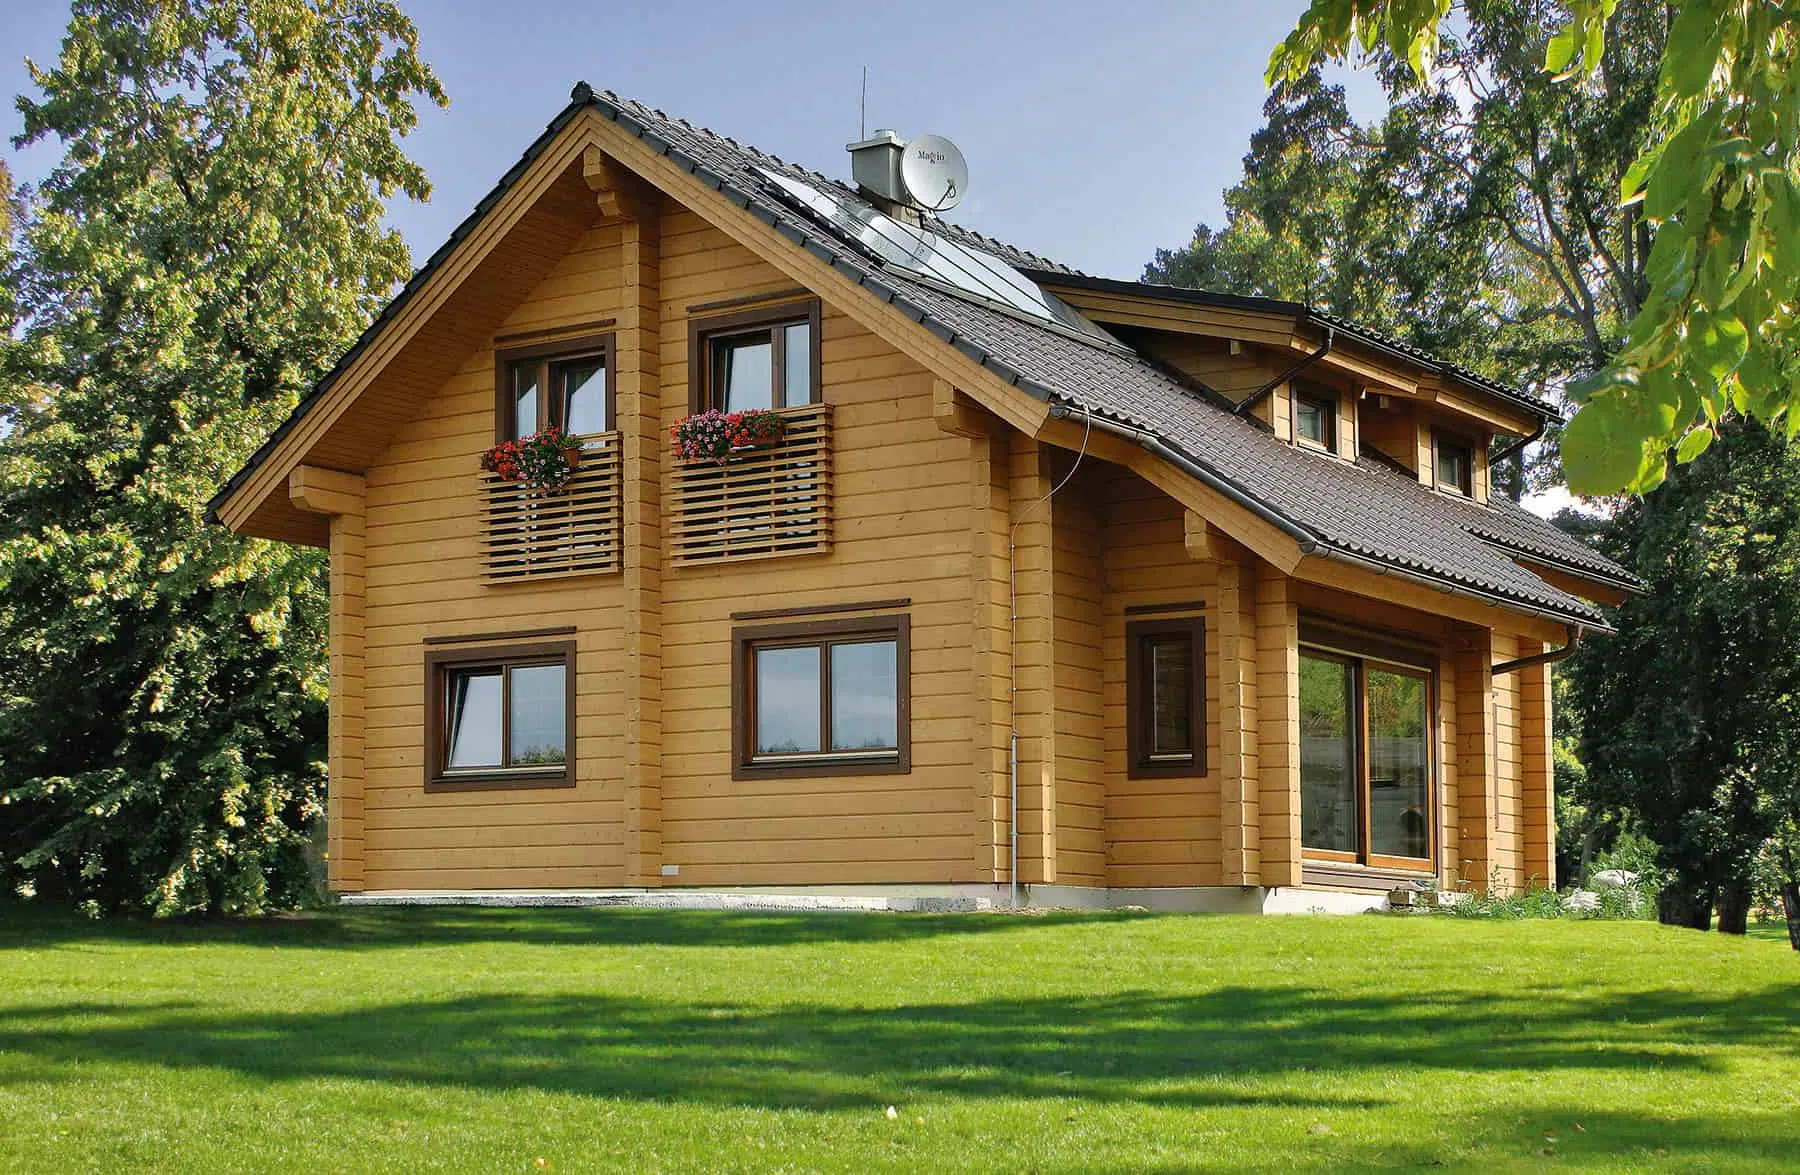 La maison en bois massif pour un cadre de vie sain